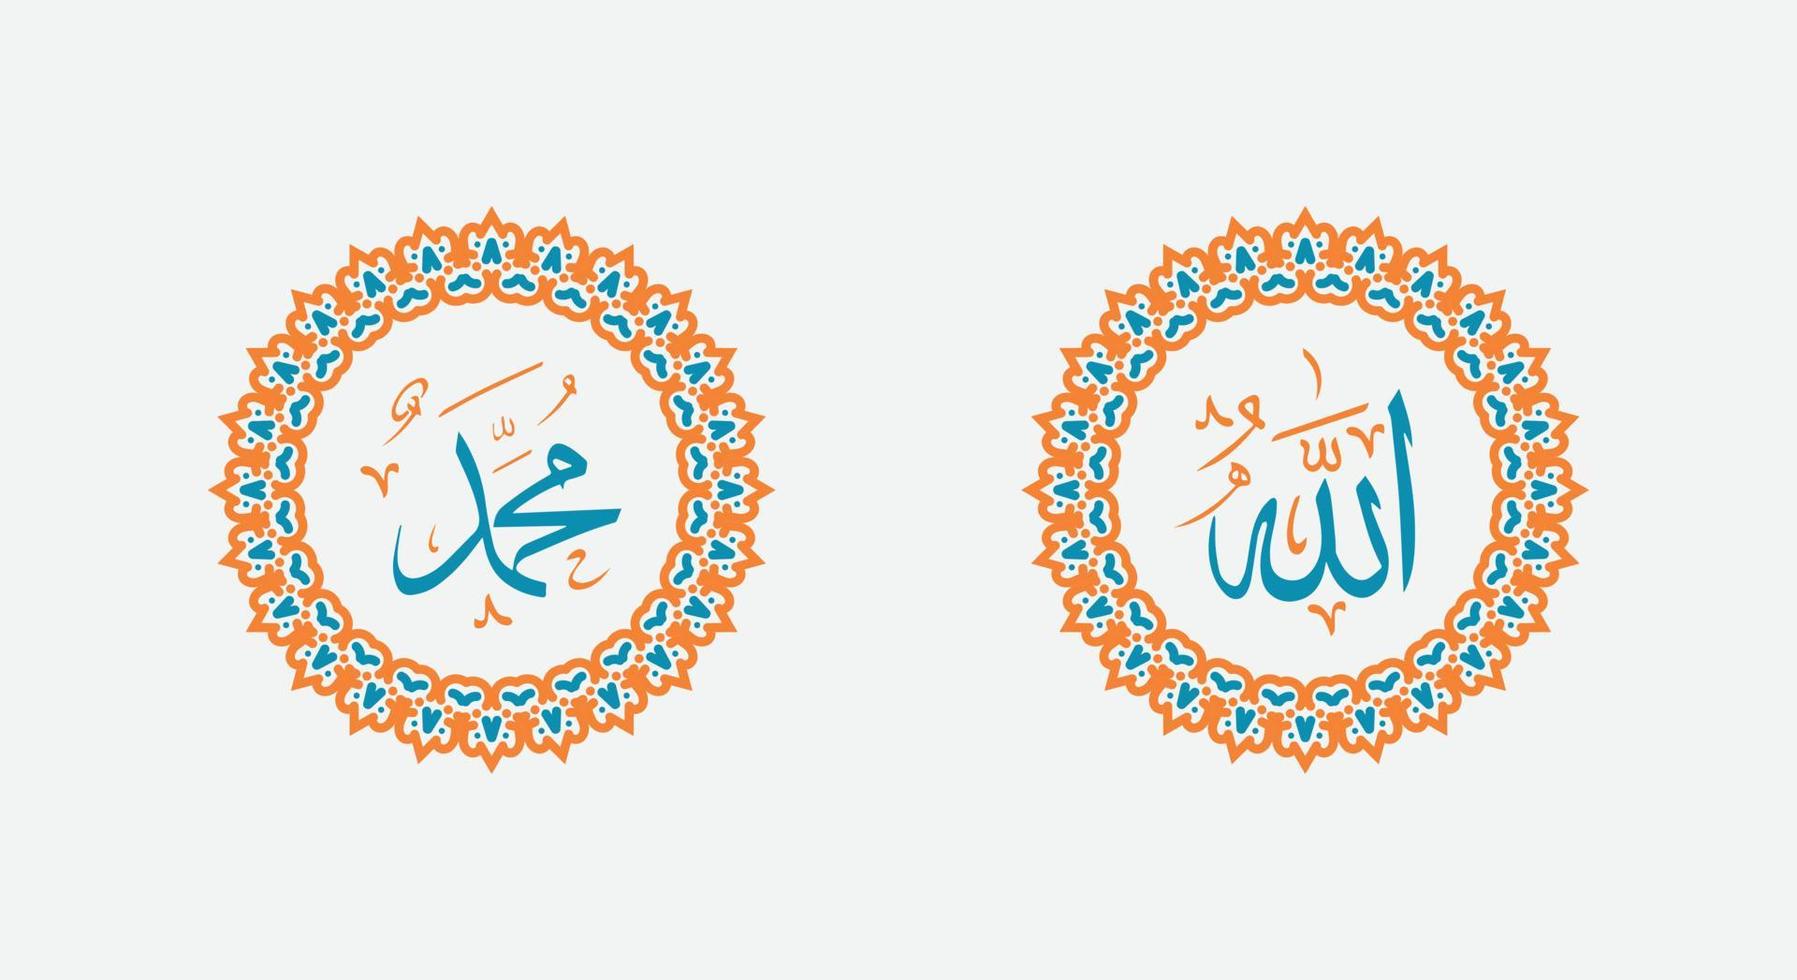 allah muhammad nombre de allah muhammad, arte de caligrafía islámica árabe de allah muhammad, con marco tradicional y color retro vector